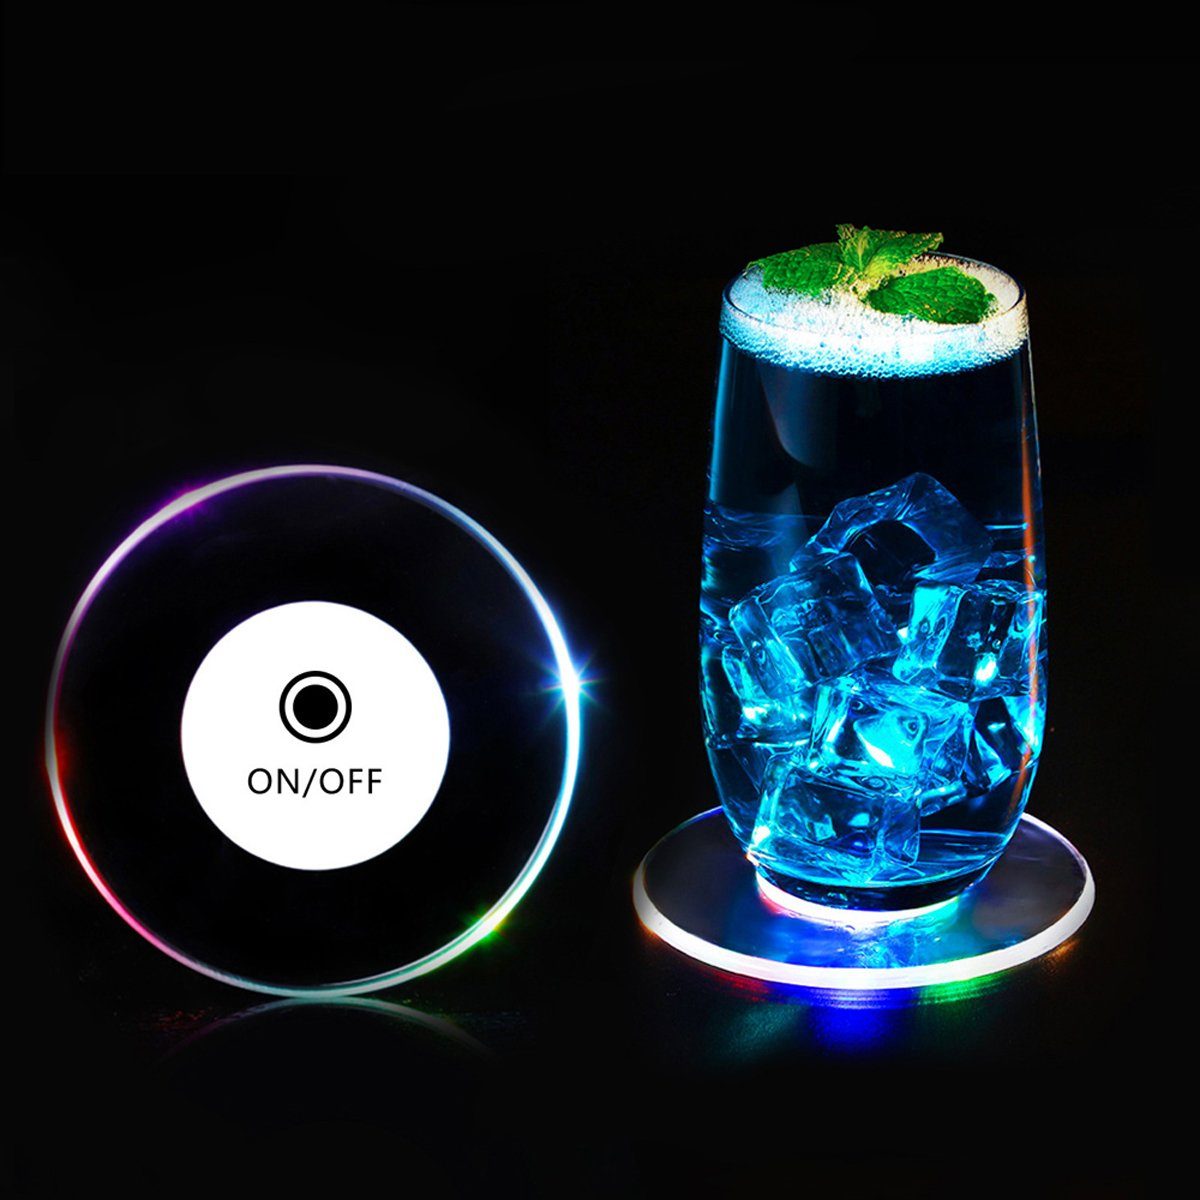 Jormftte Glasuntersetzer Bunt LED Leuchte Untersetzer für Partys Hochzeiten Bar Weihnachten Transparent1